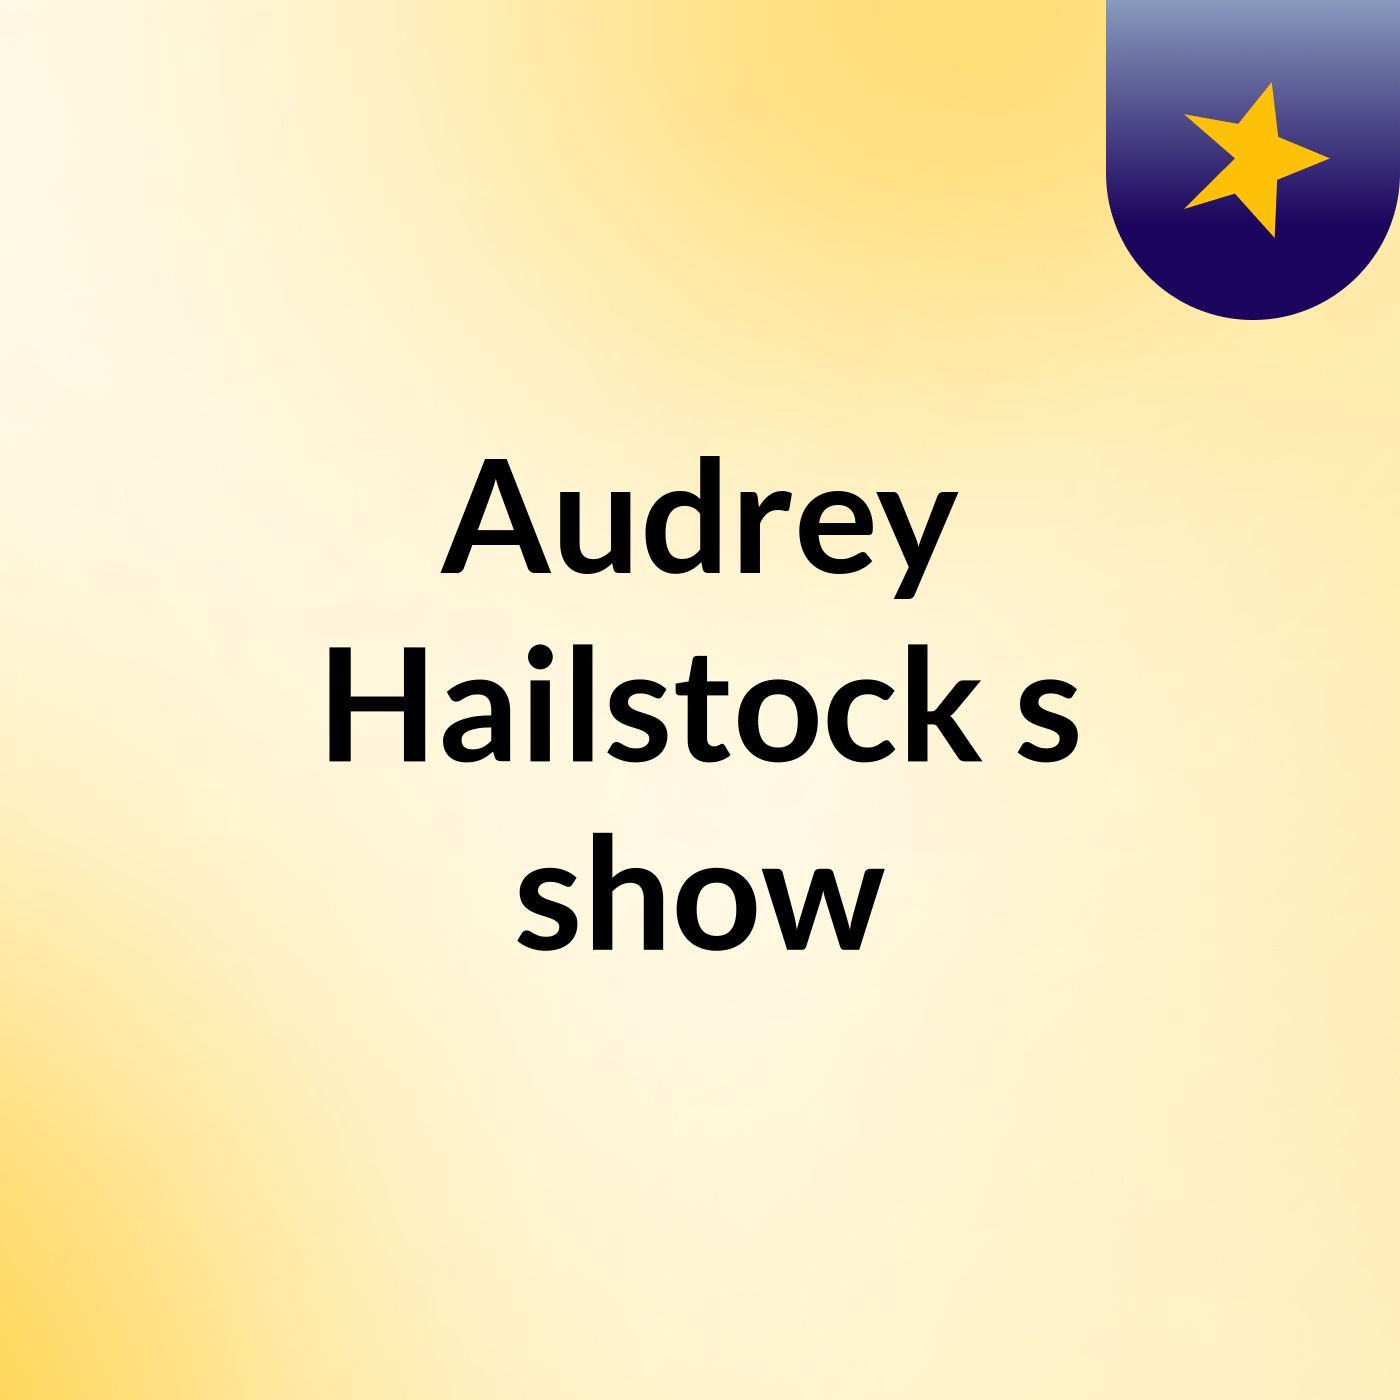 Audrey Hailstock's show